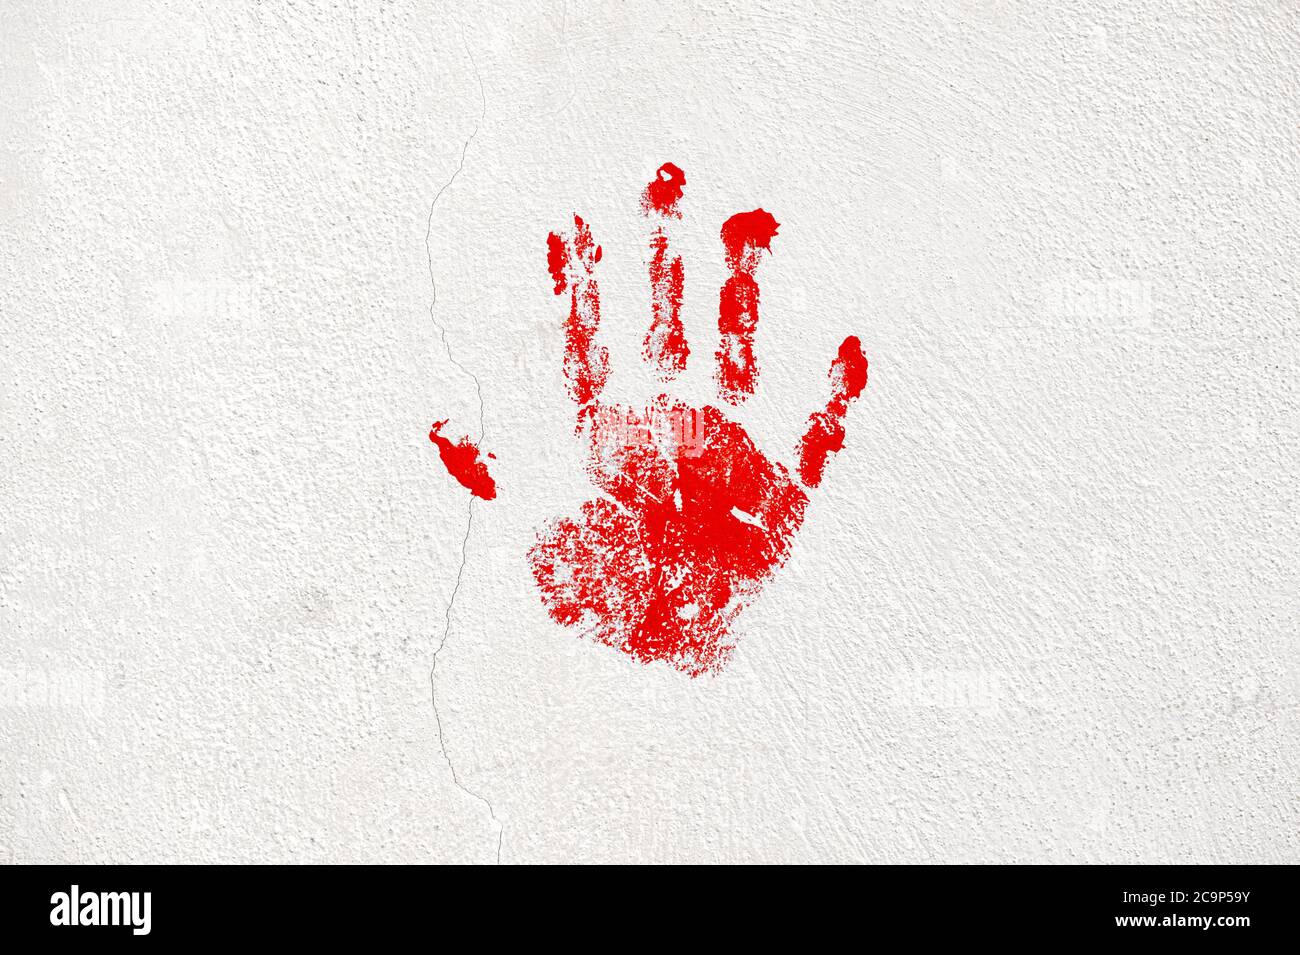 Rissige Zement Wand Hintergrund mit roten Handprint. Halloween Hintergrund Stockfoto